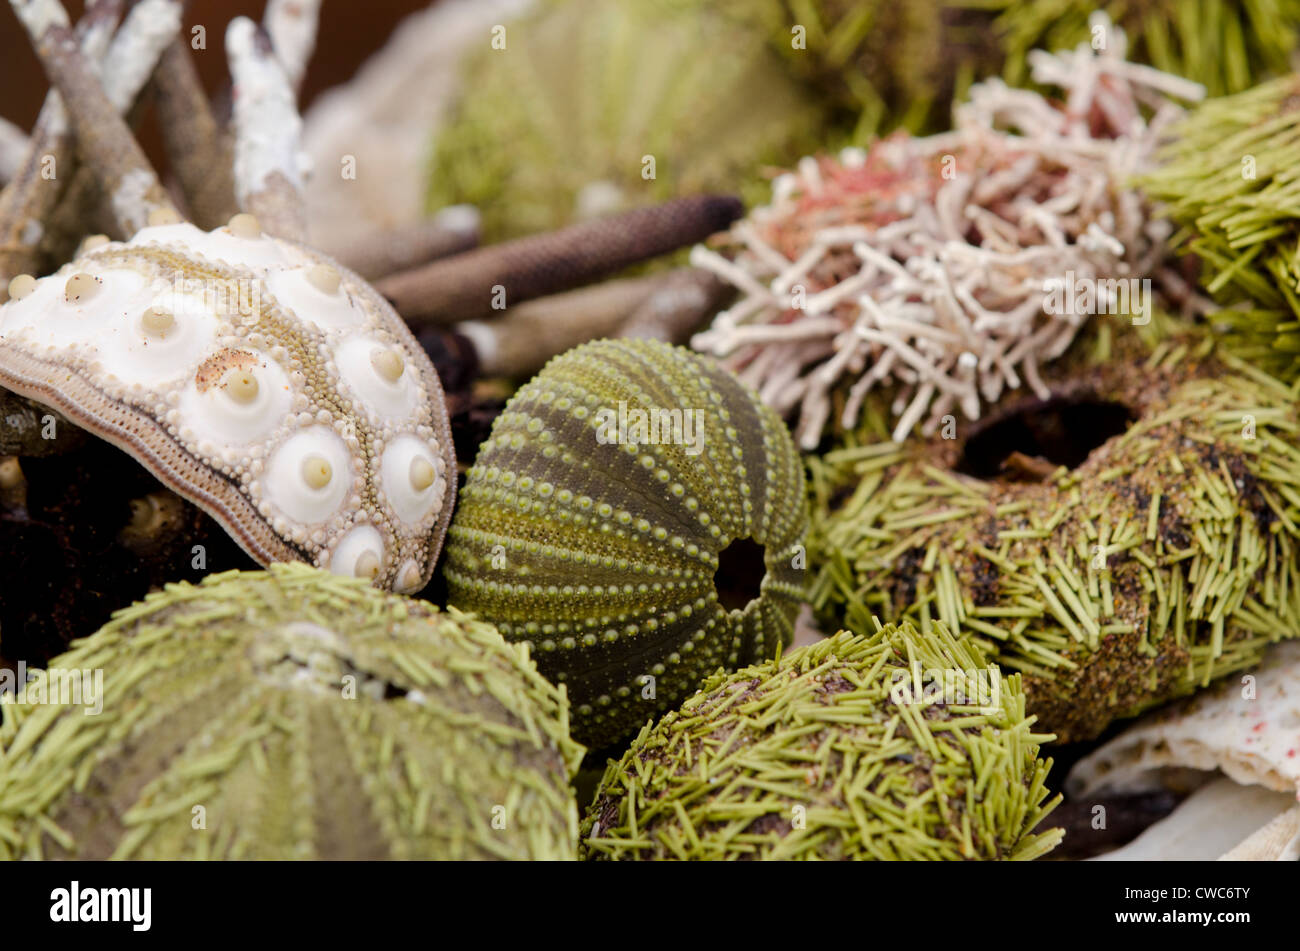 Ecuador, Galapagos, Floreana, Punta Cormoran. Group of sea shells including Green sea urchin. Stock Photo